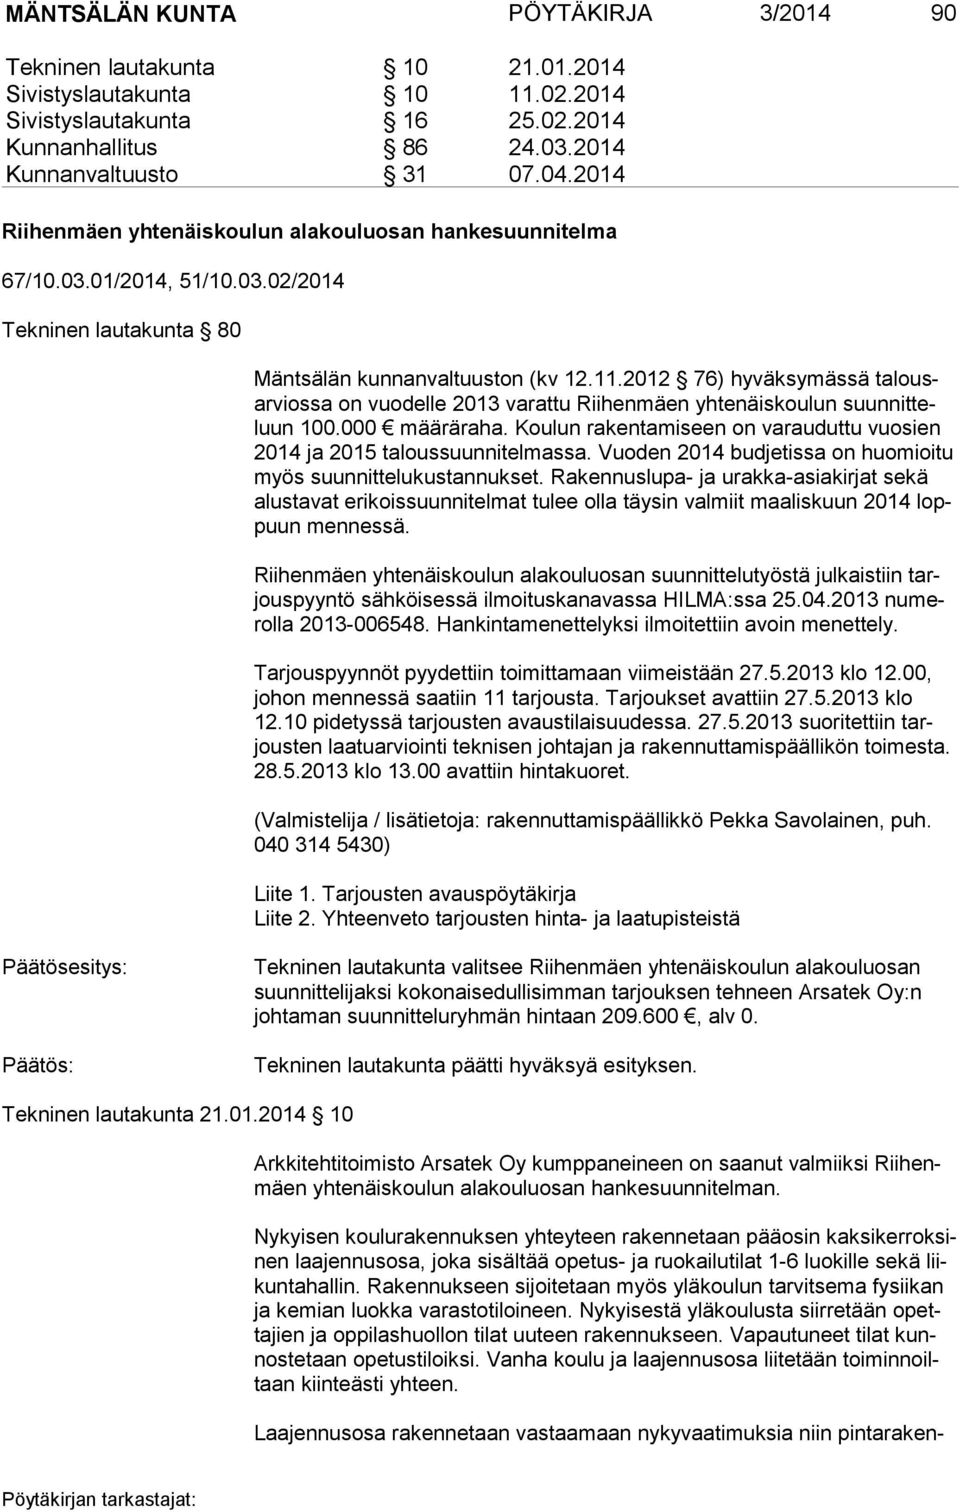 2012 76) hyväksymässä ta lousar vios sa on vuodelle 2013 varattu Riihenmäen yhtenäiskoulun suun nit teluun 100.000 määräraha.